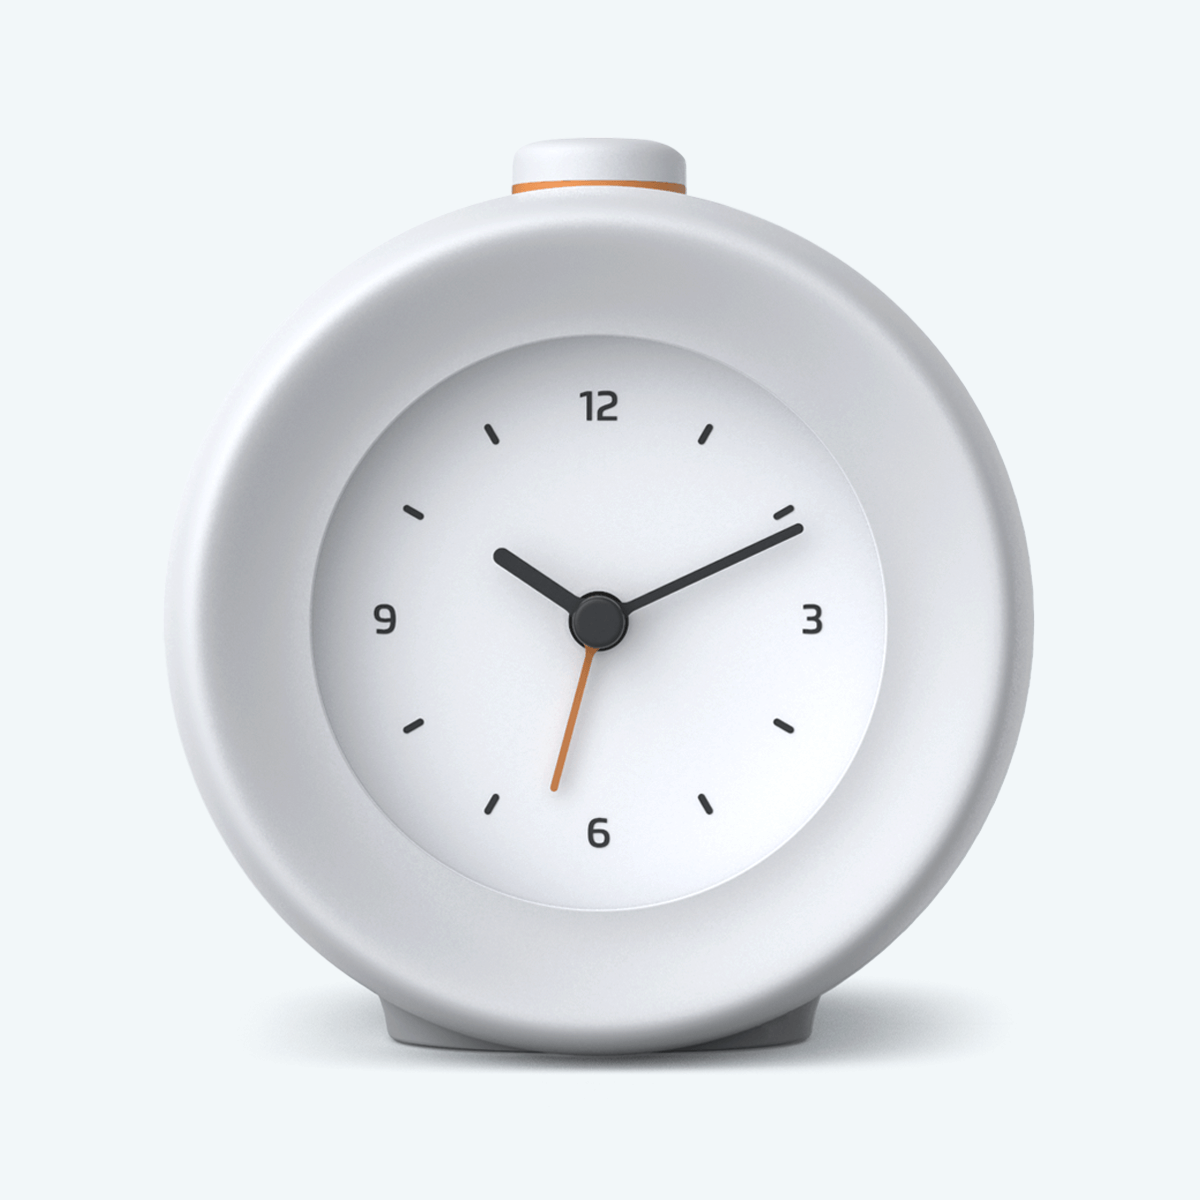 Mudita Store  Unique Analog Alarm Clock - Mudita Bell - Buy Now